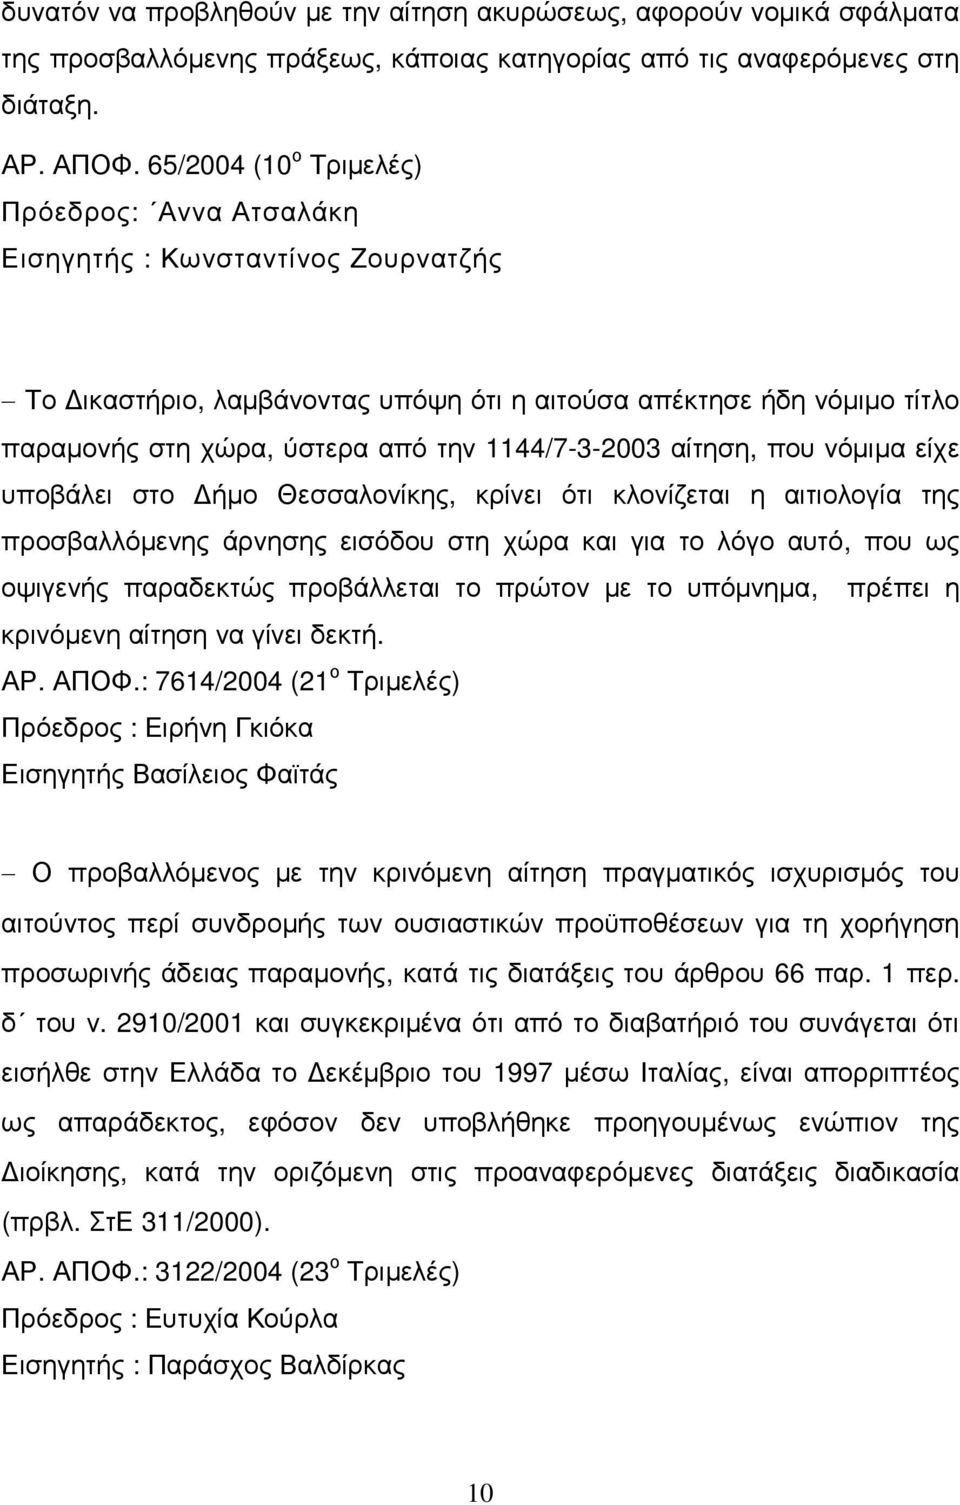 1144/7-3-2003 αίτηση, που νόµιµα είχε υποβάλει στο ήµο Θεσσαλονίκης, κρίνει ότι κλονίζεται η αιτιολογία της προσβαλλόµενης άρνησης εισόδου στη χώρα και για το λόγο αυτό, που ως οψιγενής παραδεκτώς